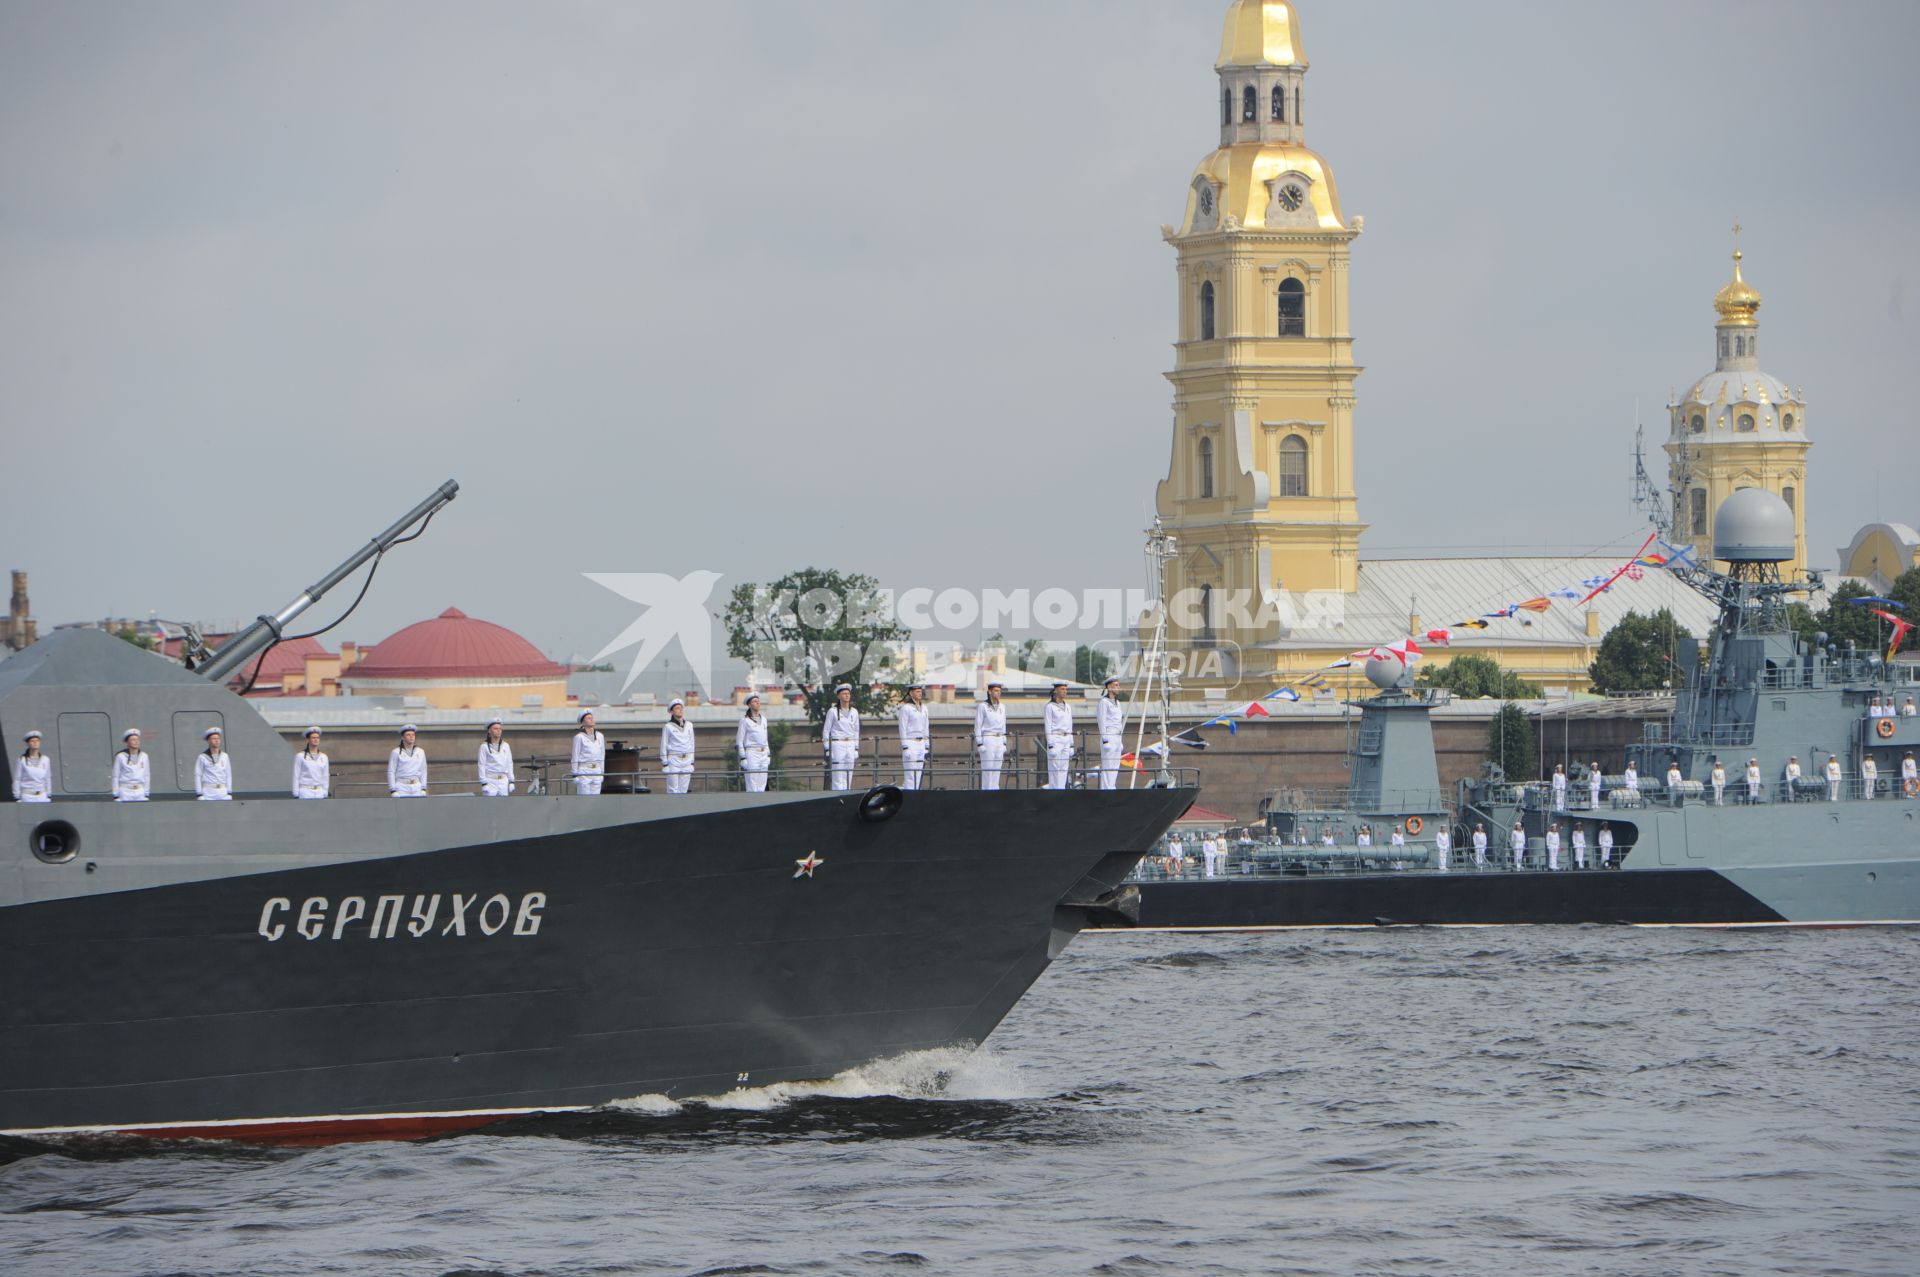 Санкт-Петербург.   Малый ракетный корабль  `Серпухов `
во время  главного военно-морского  парада  в честь празднования Дня Военно-Морского Флота России.